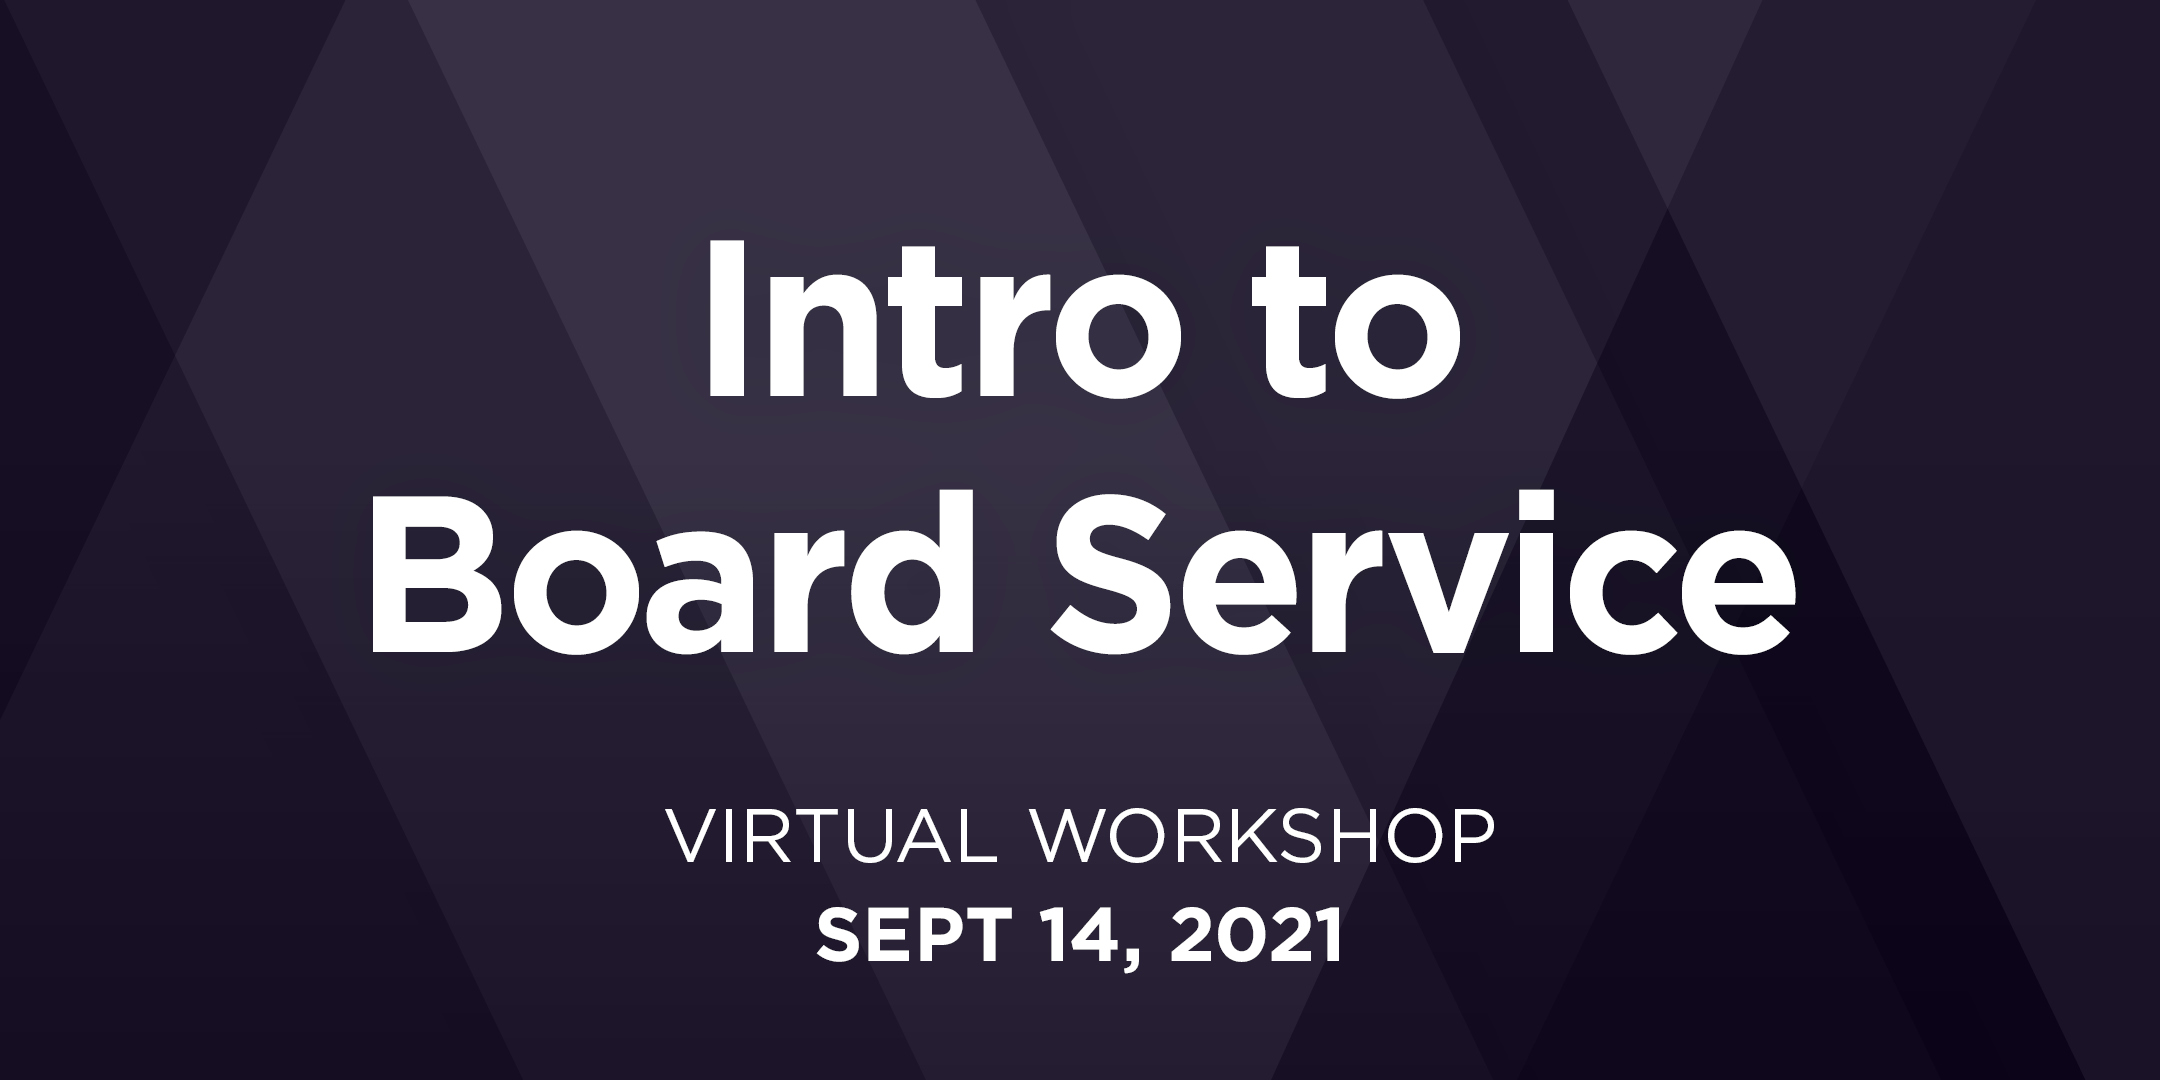 Intro to Board Service